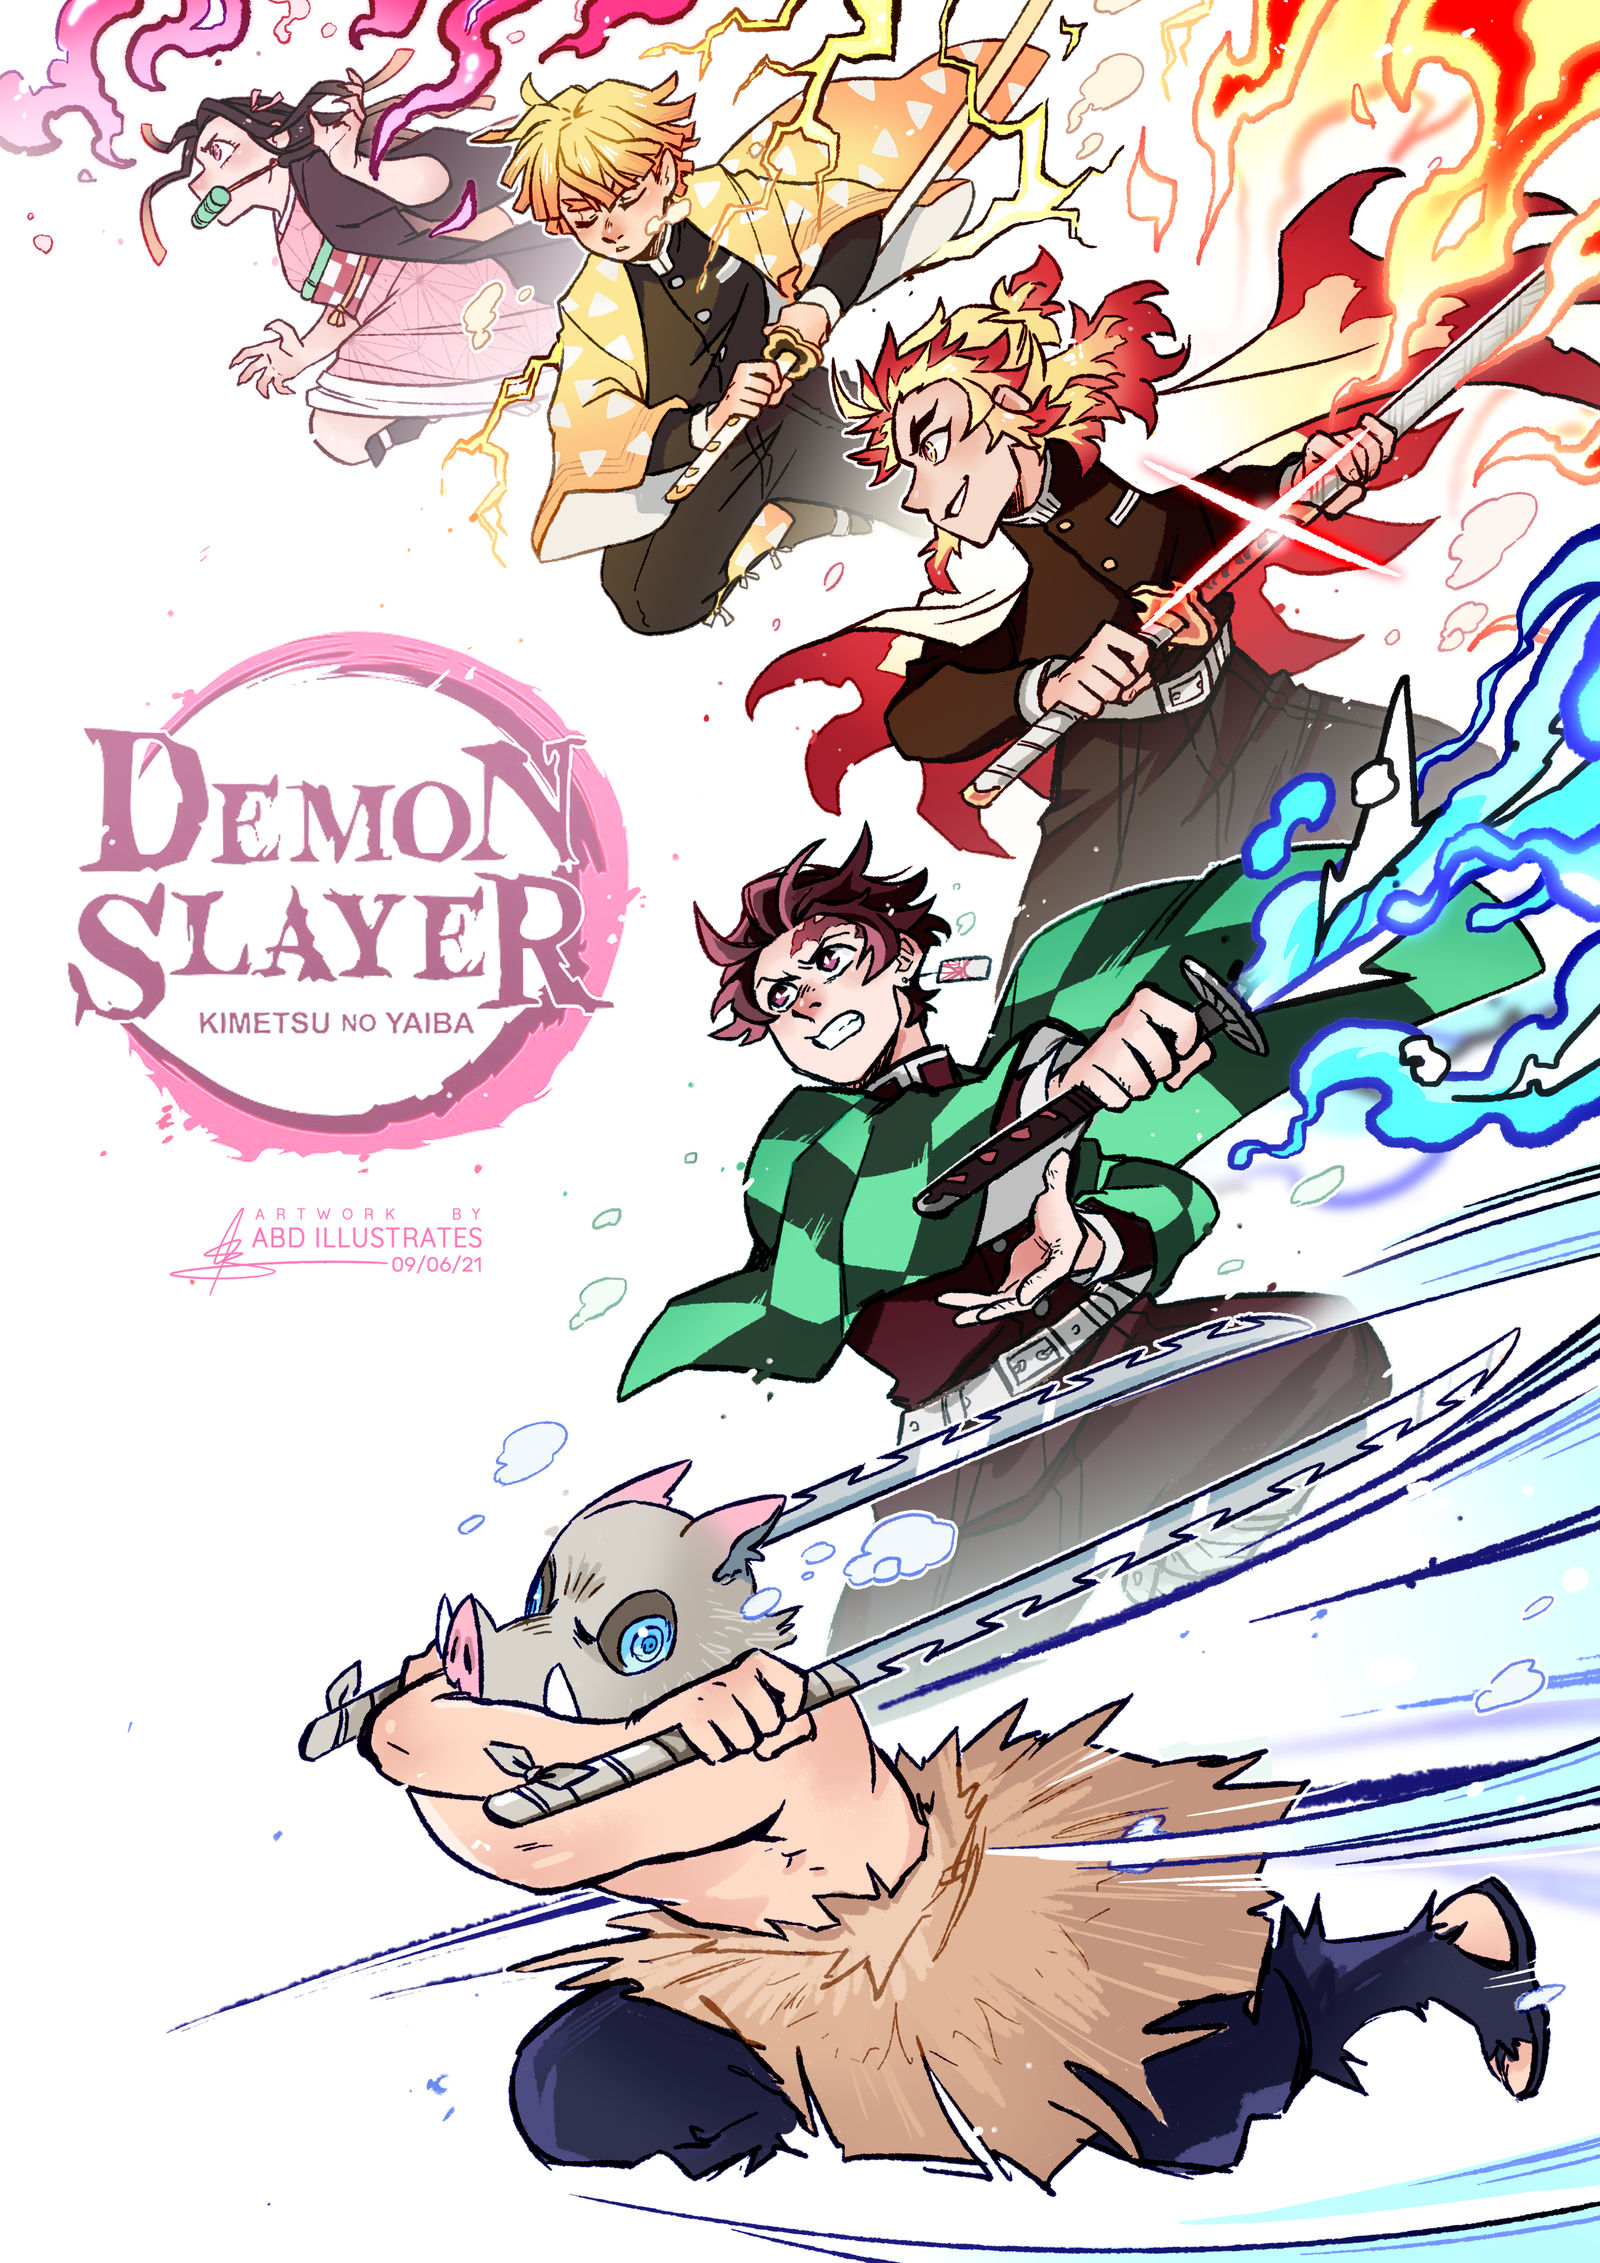 Speed drawing - Tanjiro, Nezuko, Zenitsu, Inosuke, [Demon Slayer] 